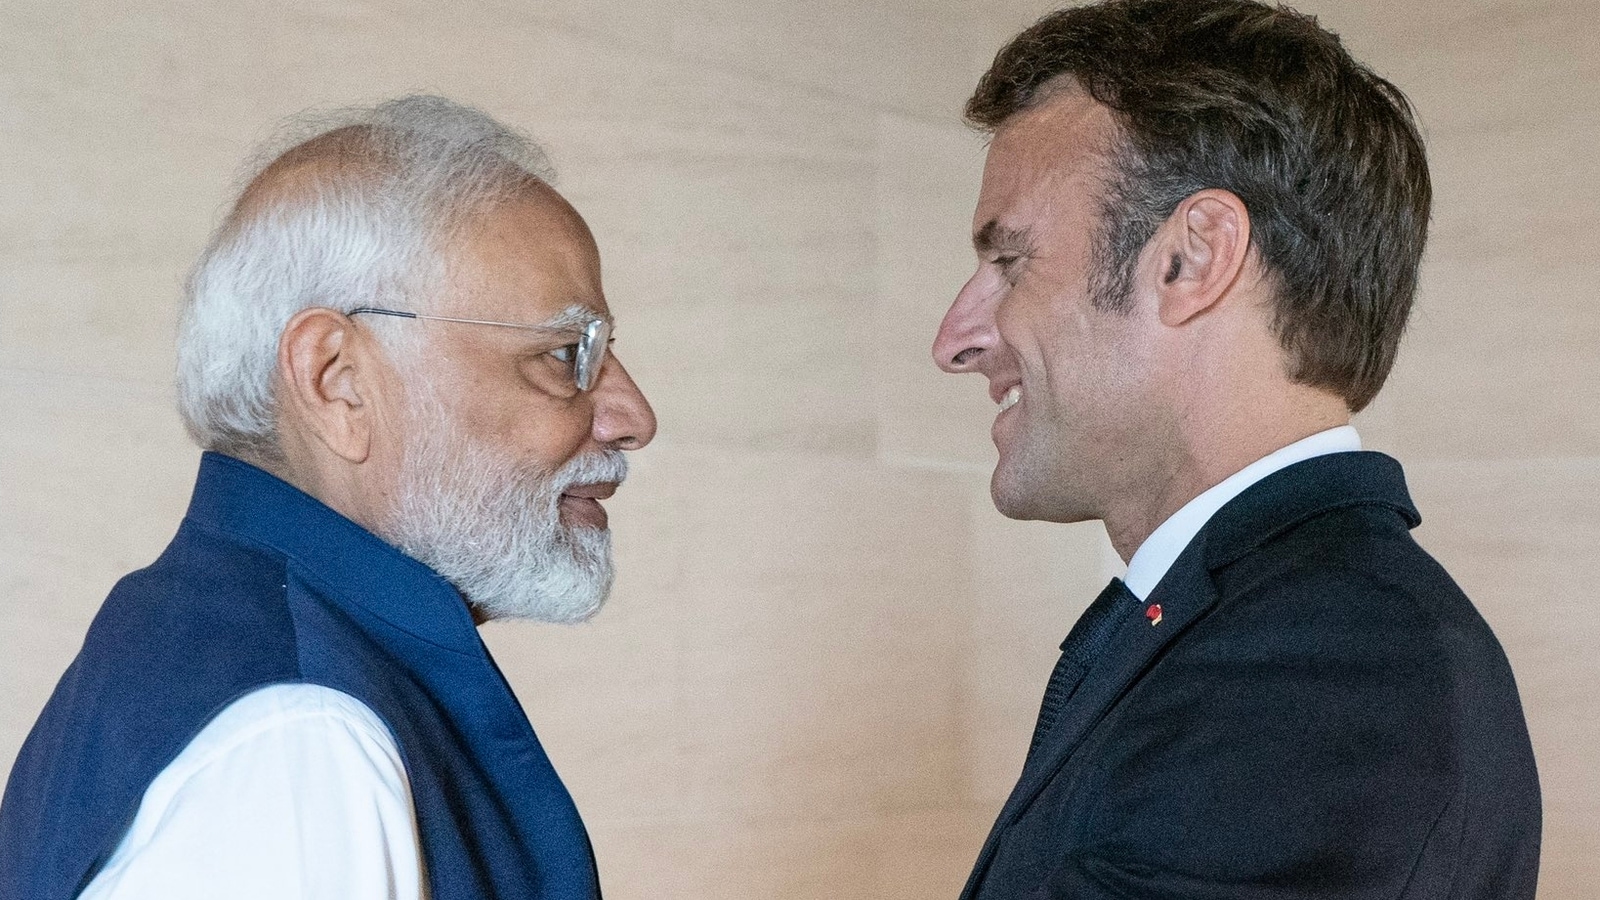 Tweet ‘Satu Tanah…’ Macron saat India mengambil alih kepemimpinan G20;  dan penyebutan PM |  Berita India Terbaru